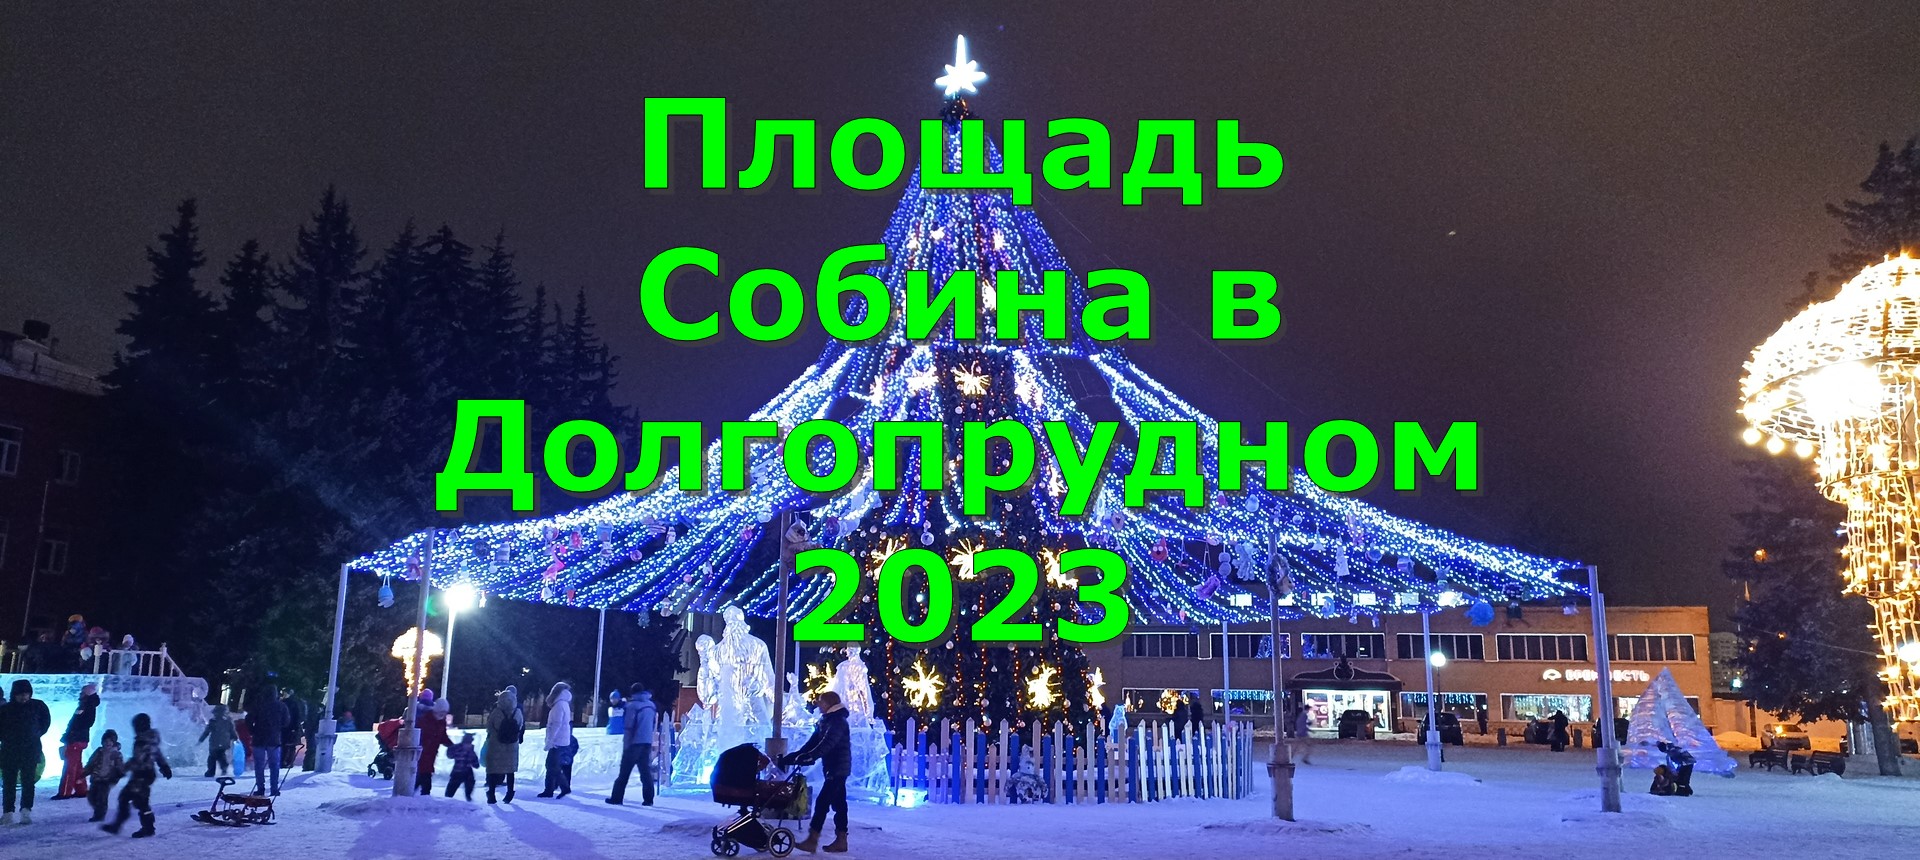 Площадь Собина в Долгопрудном 2023